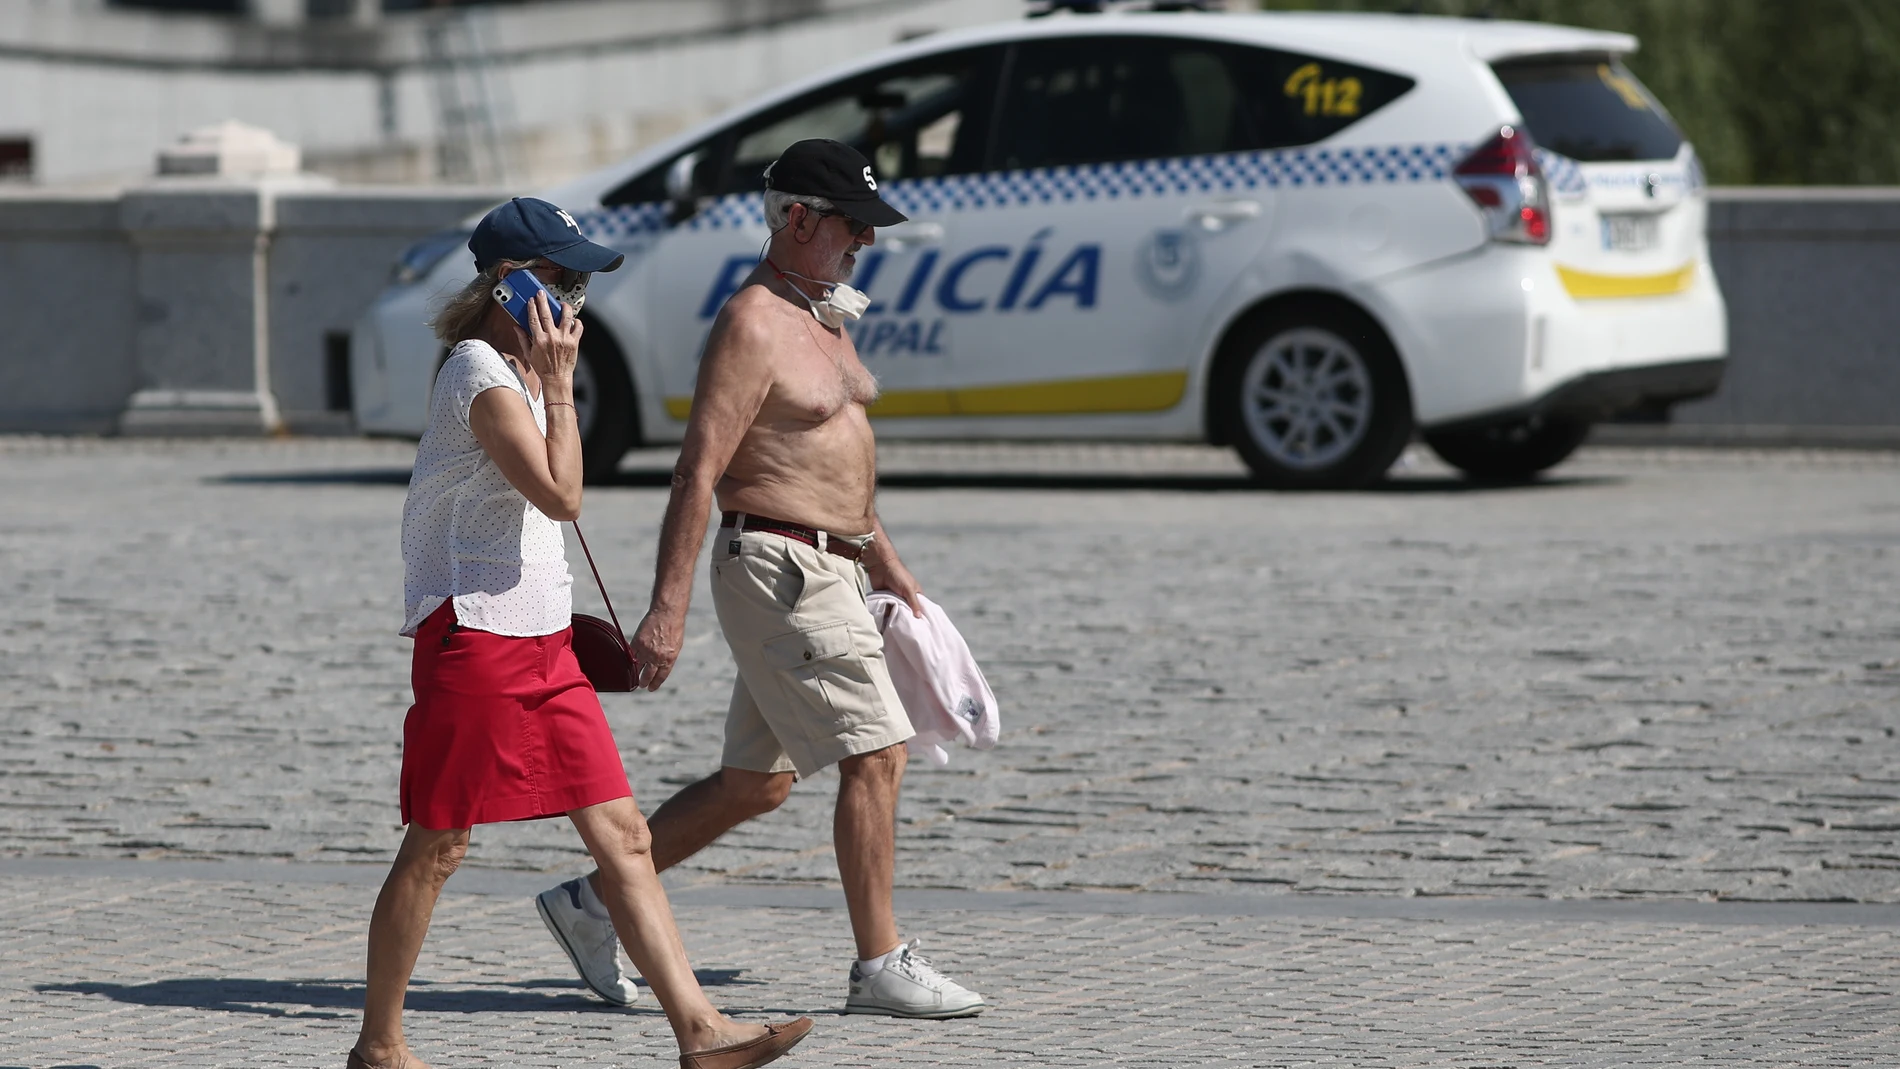 Una pareja caminando en Madrid el pasado miércoles 23 de junio, jornada en que se alcanzaron los 37ºC en la capital